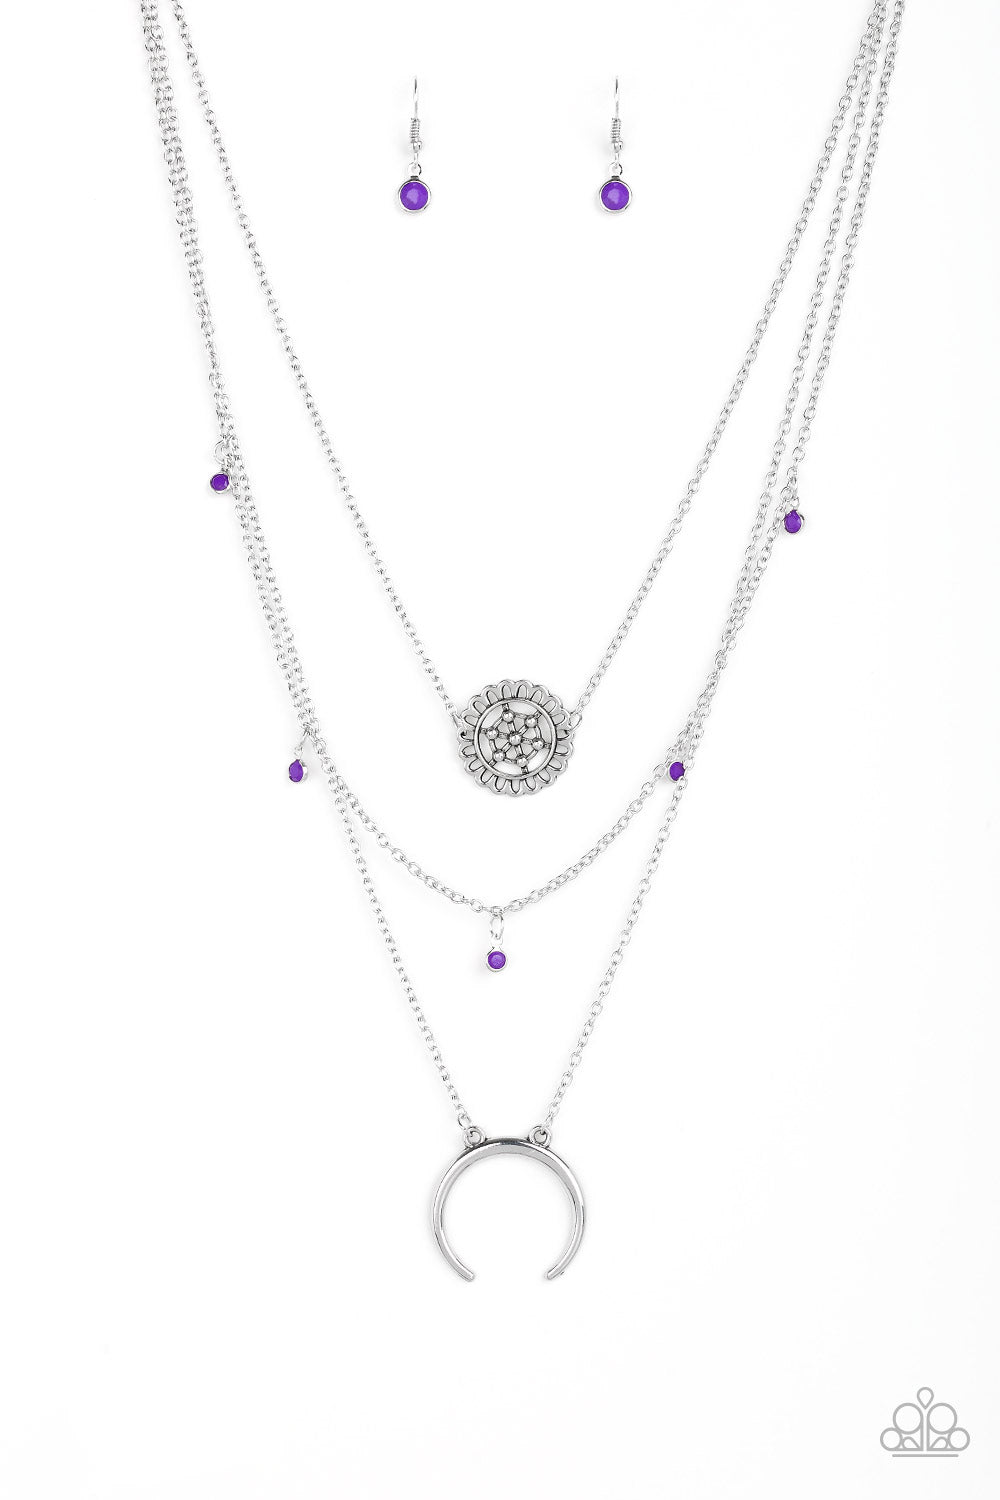 paparazzi-accessories-lunar-lotus-purple-necklace